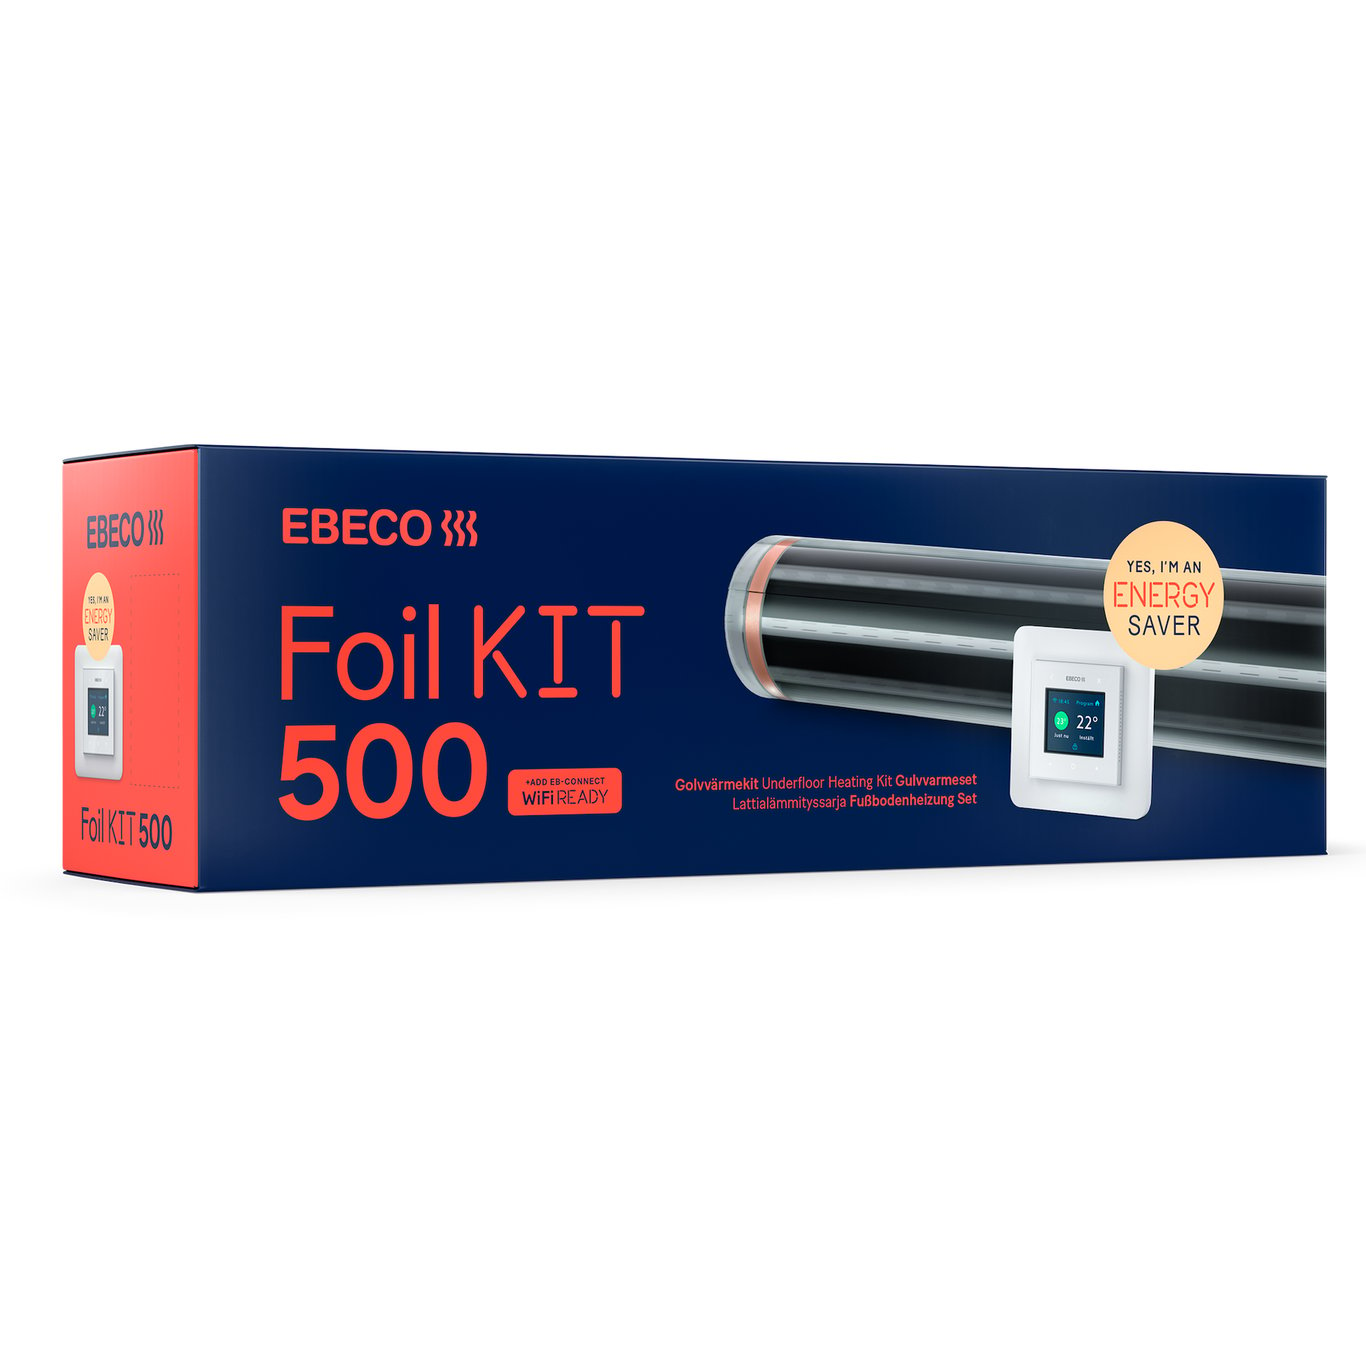 EBECO FOIL KIT 500 12-14 M² 43CM X 31,5M 65W/M²